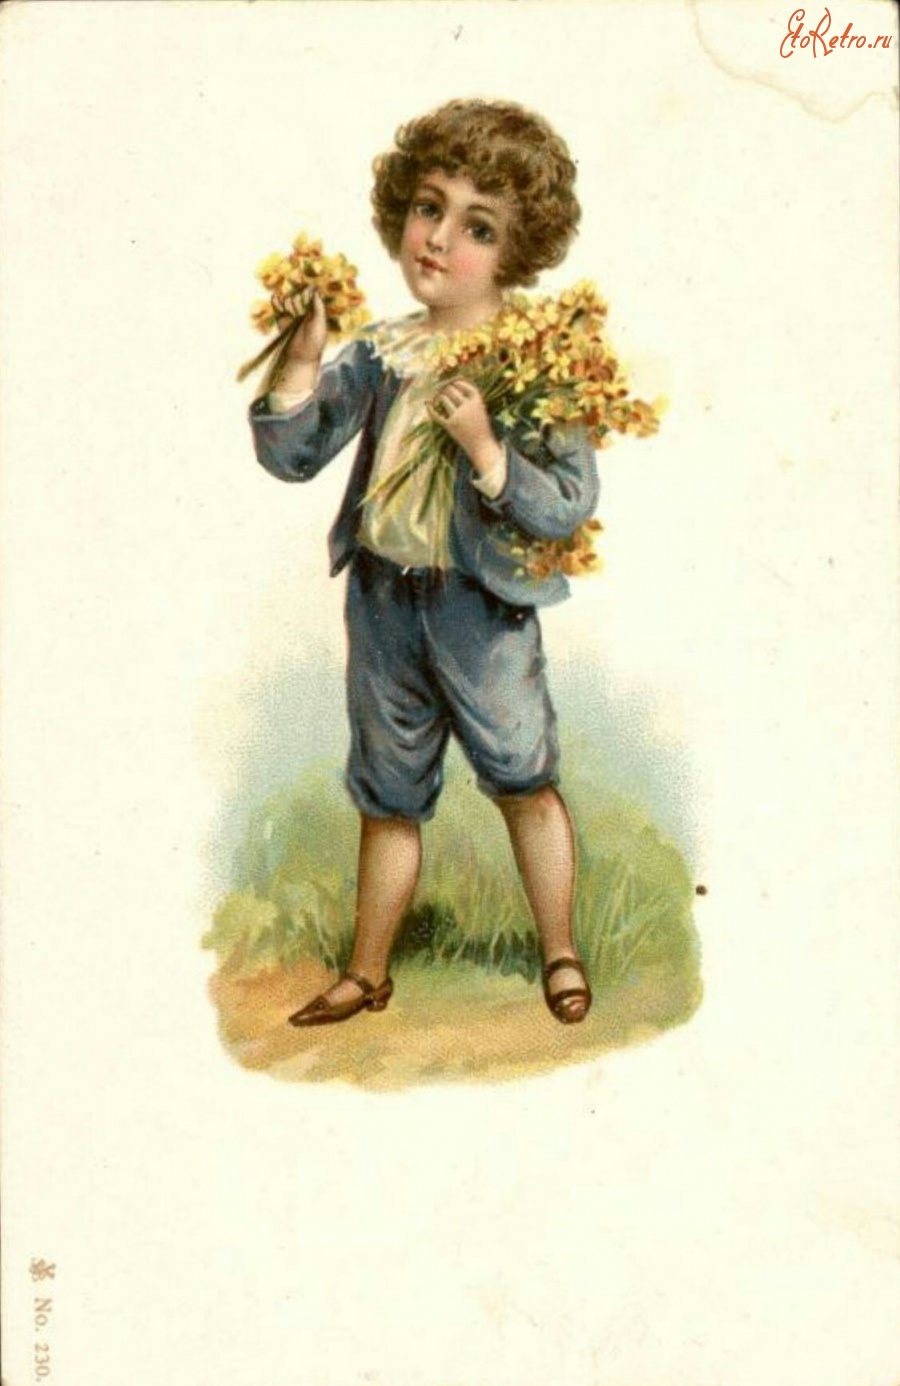 Ретро открытки - Мальчик с букетом жёлтых цветов